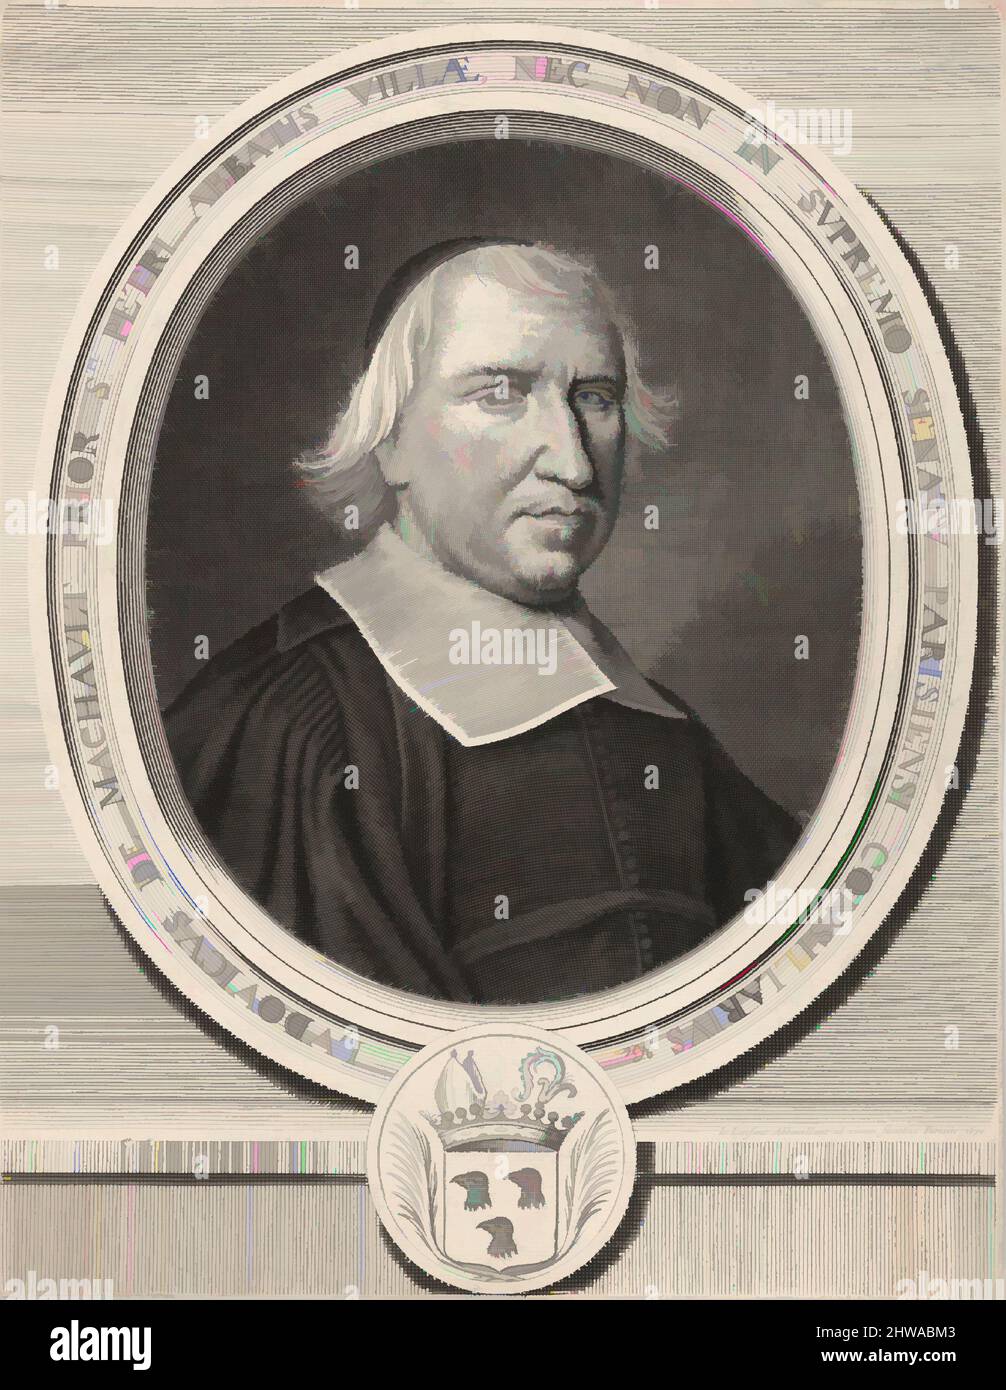 File:Portrait of Louis XIII - Morin.jpg - Wikimedia Commons